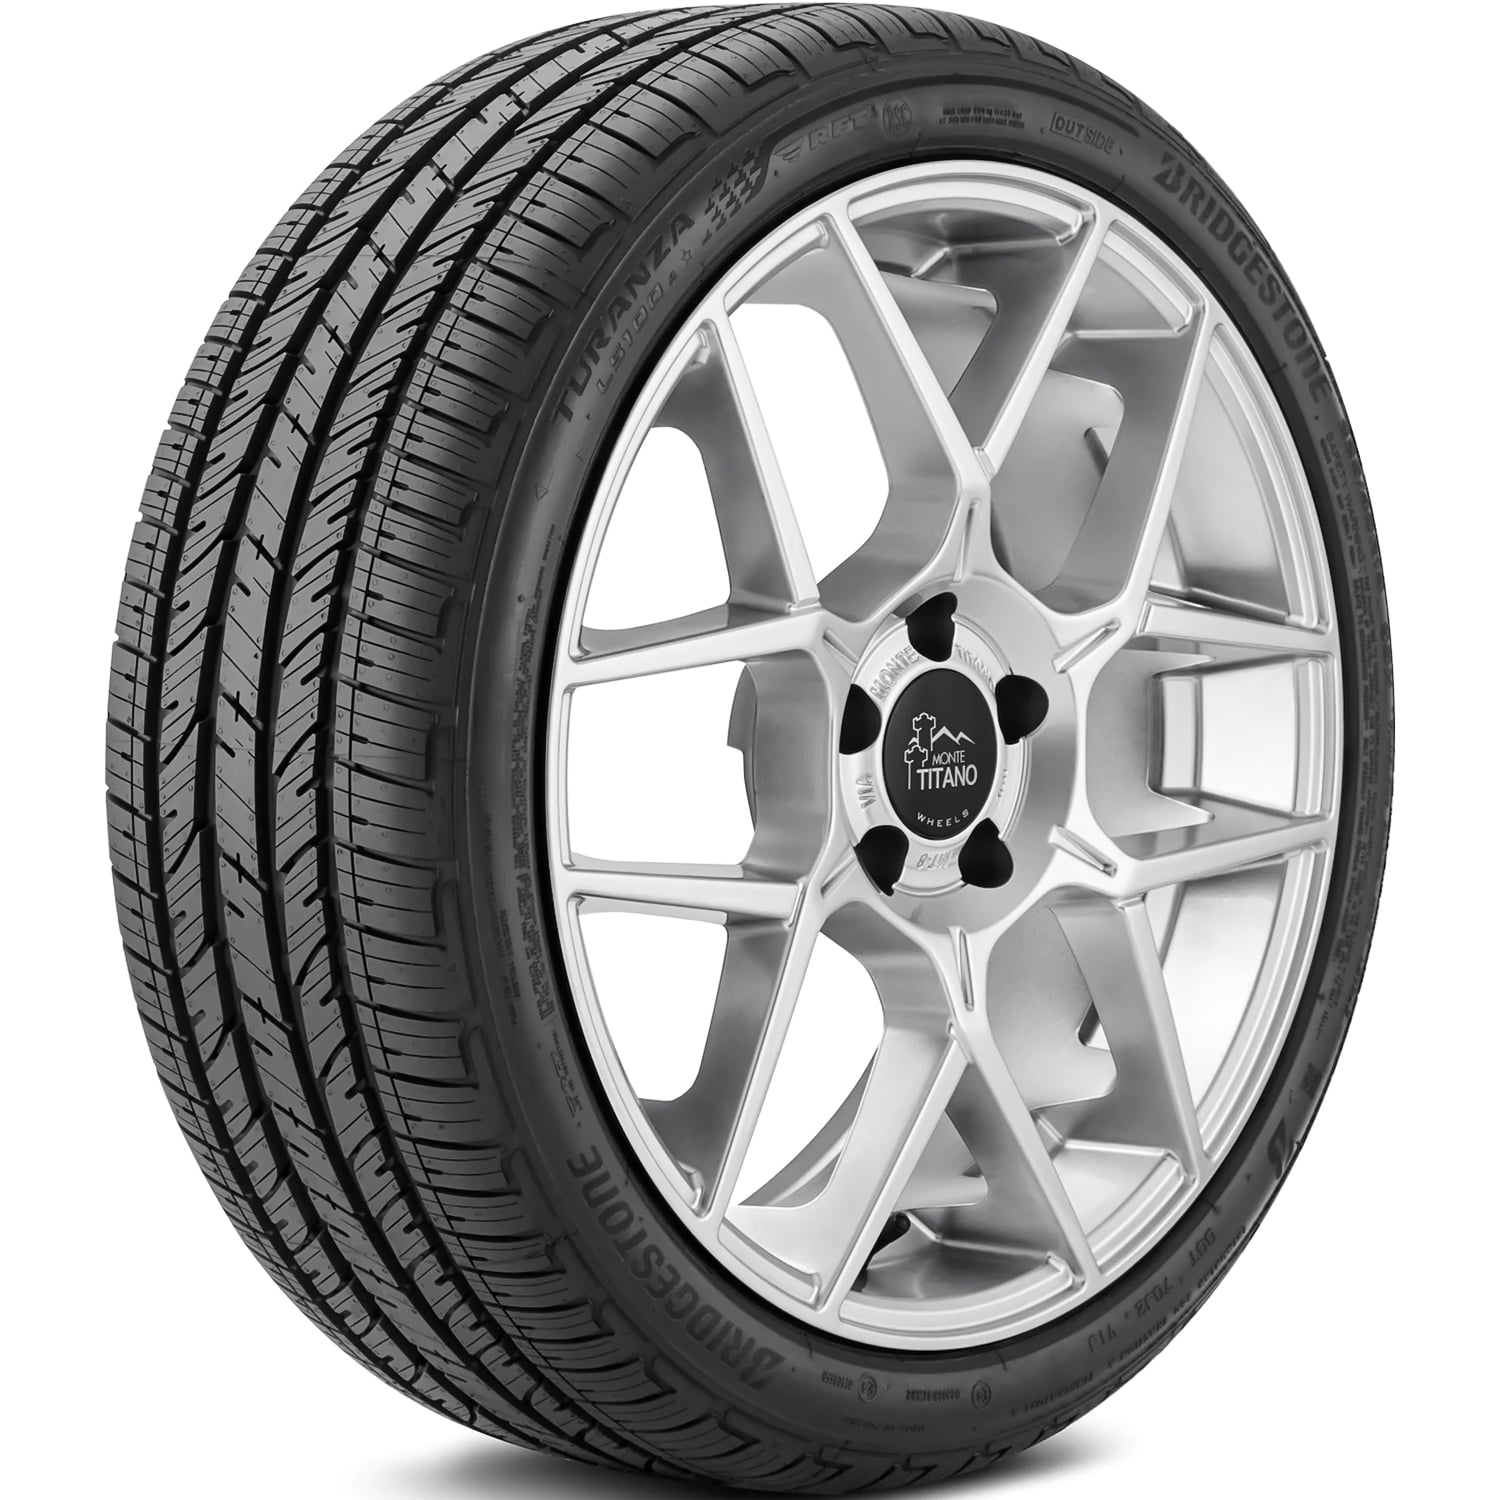 Bridgestone Turanza LS100 A RFT 225/45R18 91H (MOE) All Season Run Flat  Tire